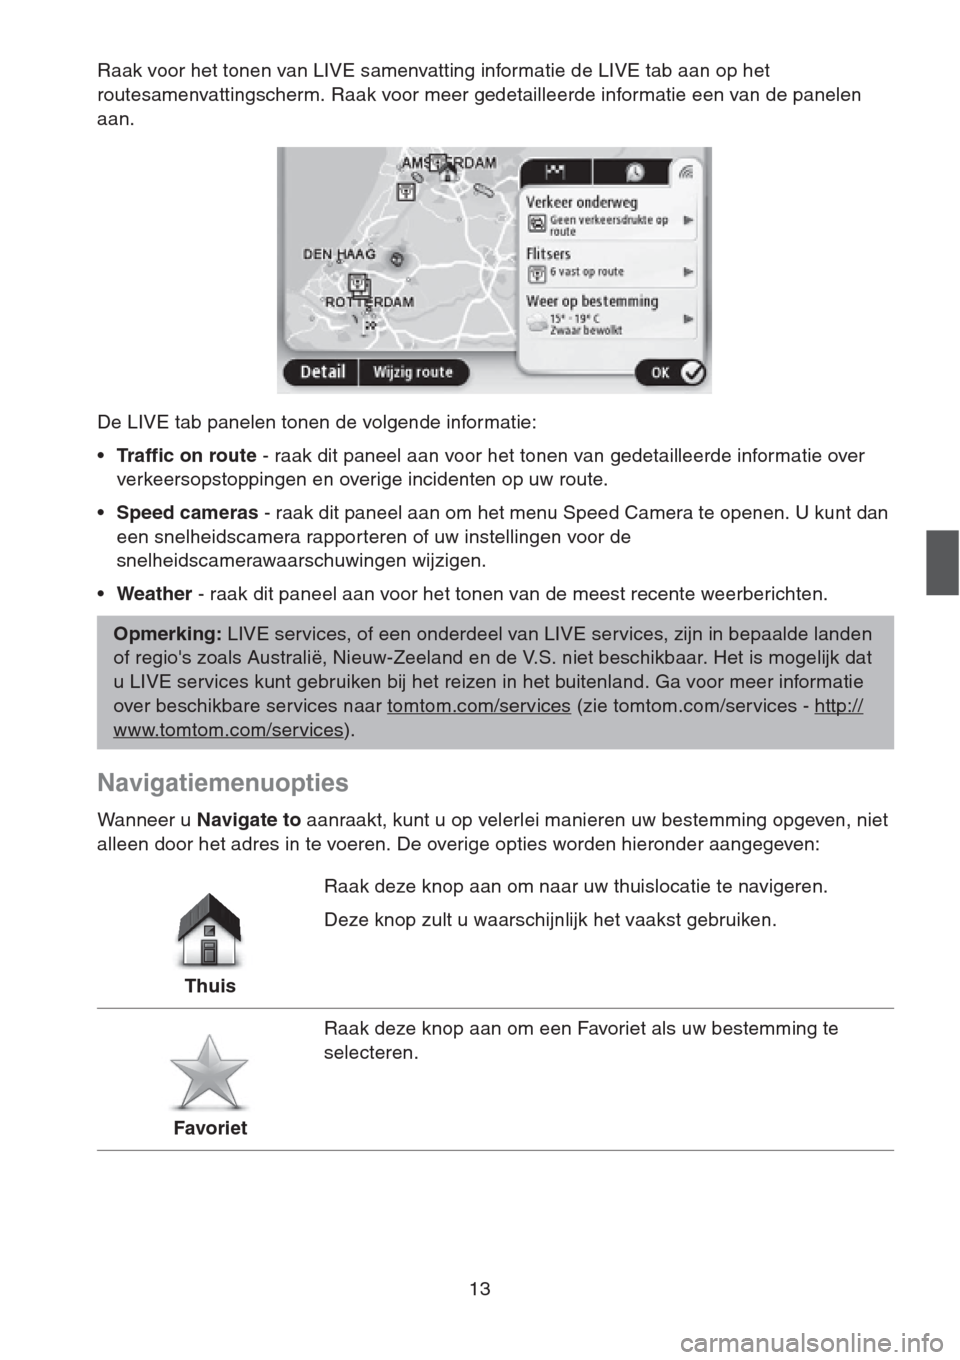 MAZDA MODEL CX-5 2013  Navigation handleiding (in Dutch) 13
Raak voor het tonen van LIVE samenvatting informatie de LIVE tab aan op het 
routesamenvattingscherm. Raak voor meer gedetailleerde informatie een van de panelen 
aan.
De LIVE tab panelen tonen de 